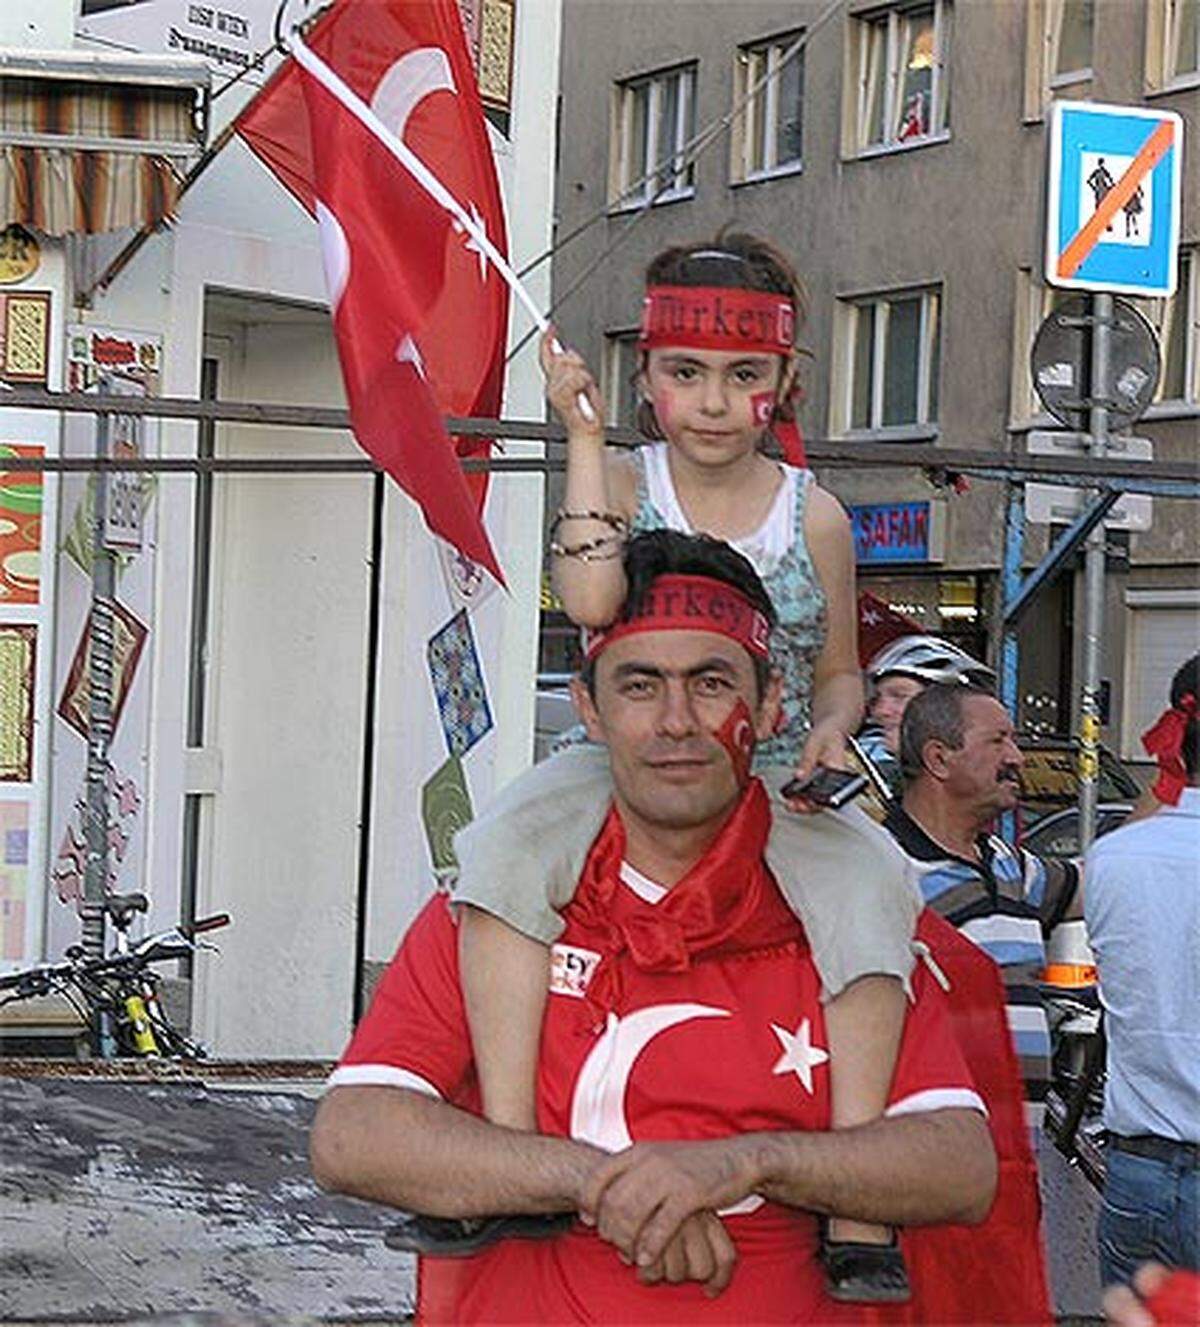 Wenige Meter weiter sorgen aber auch schon die türkischen Fans für Stimmung.